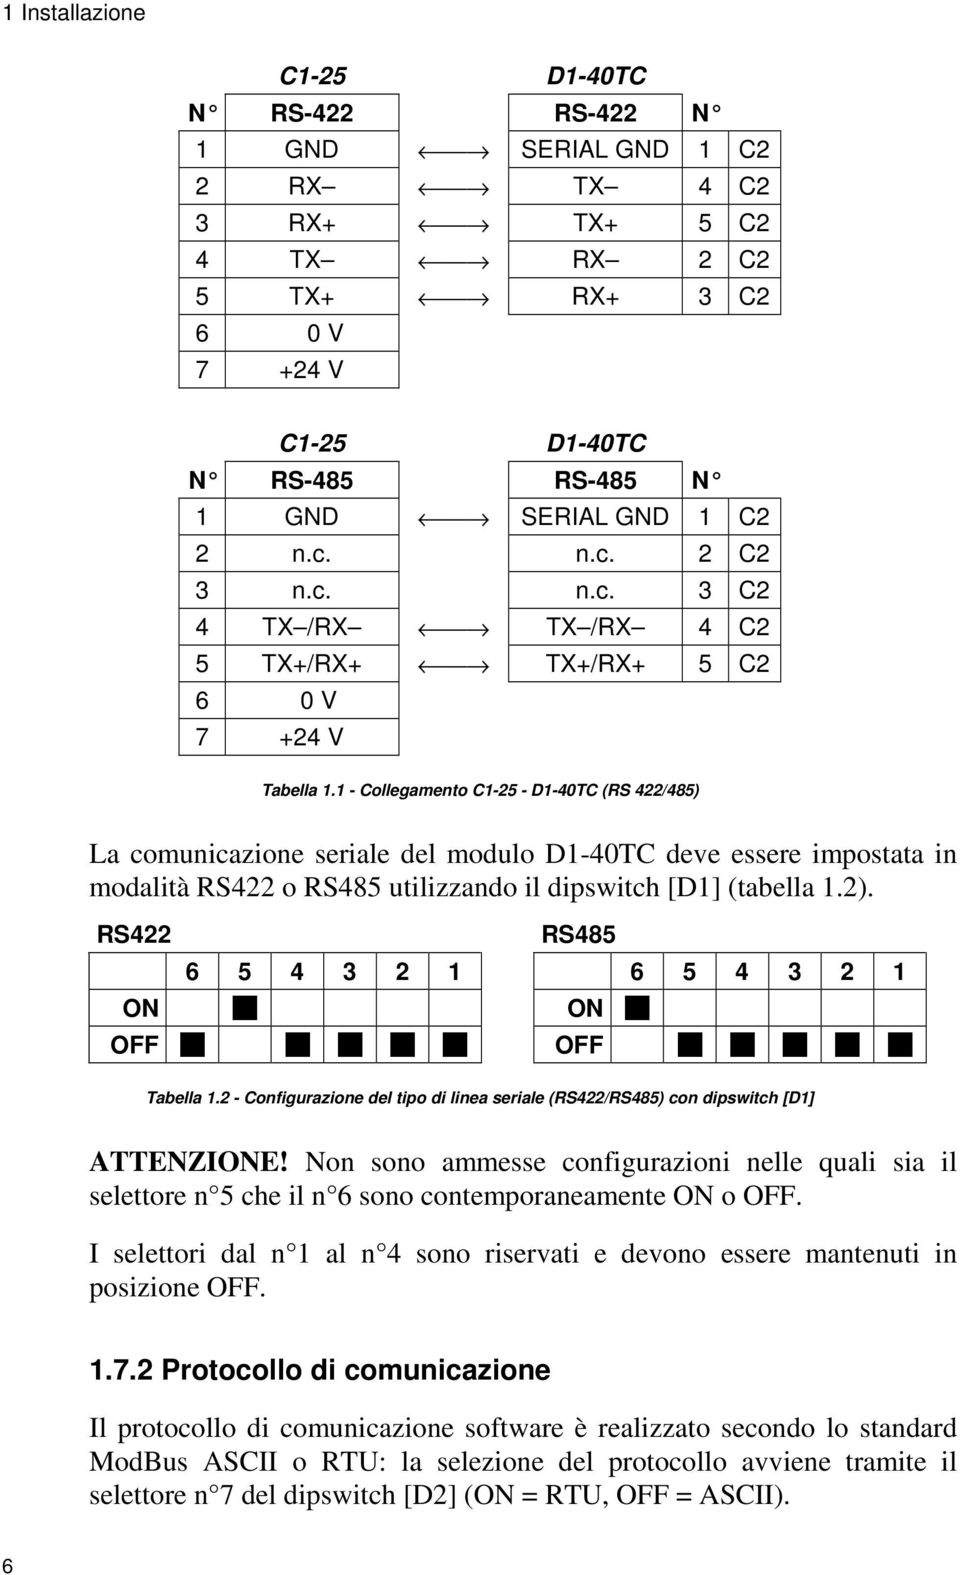 1 - Collegamento C1-25 - D1-40TC (RS 422/485) La comunicazione seriale del modulo D1-40TC deve essere impostata in modalità RS422 o RS485 utilizzando il dipswitch [D1] (tabella 1.2).